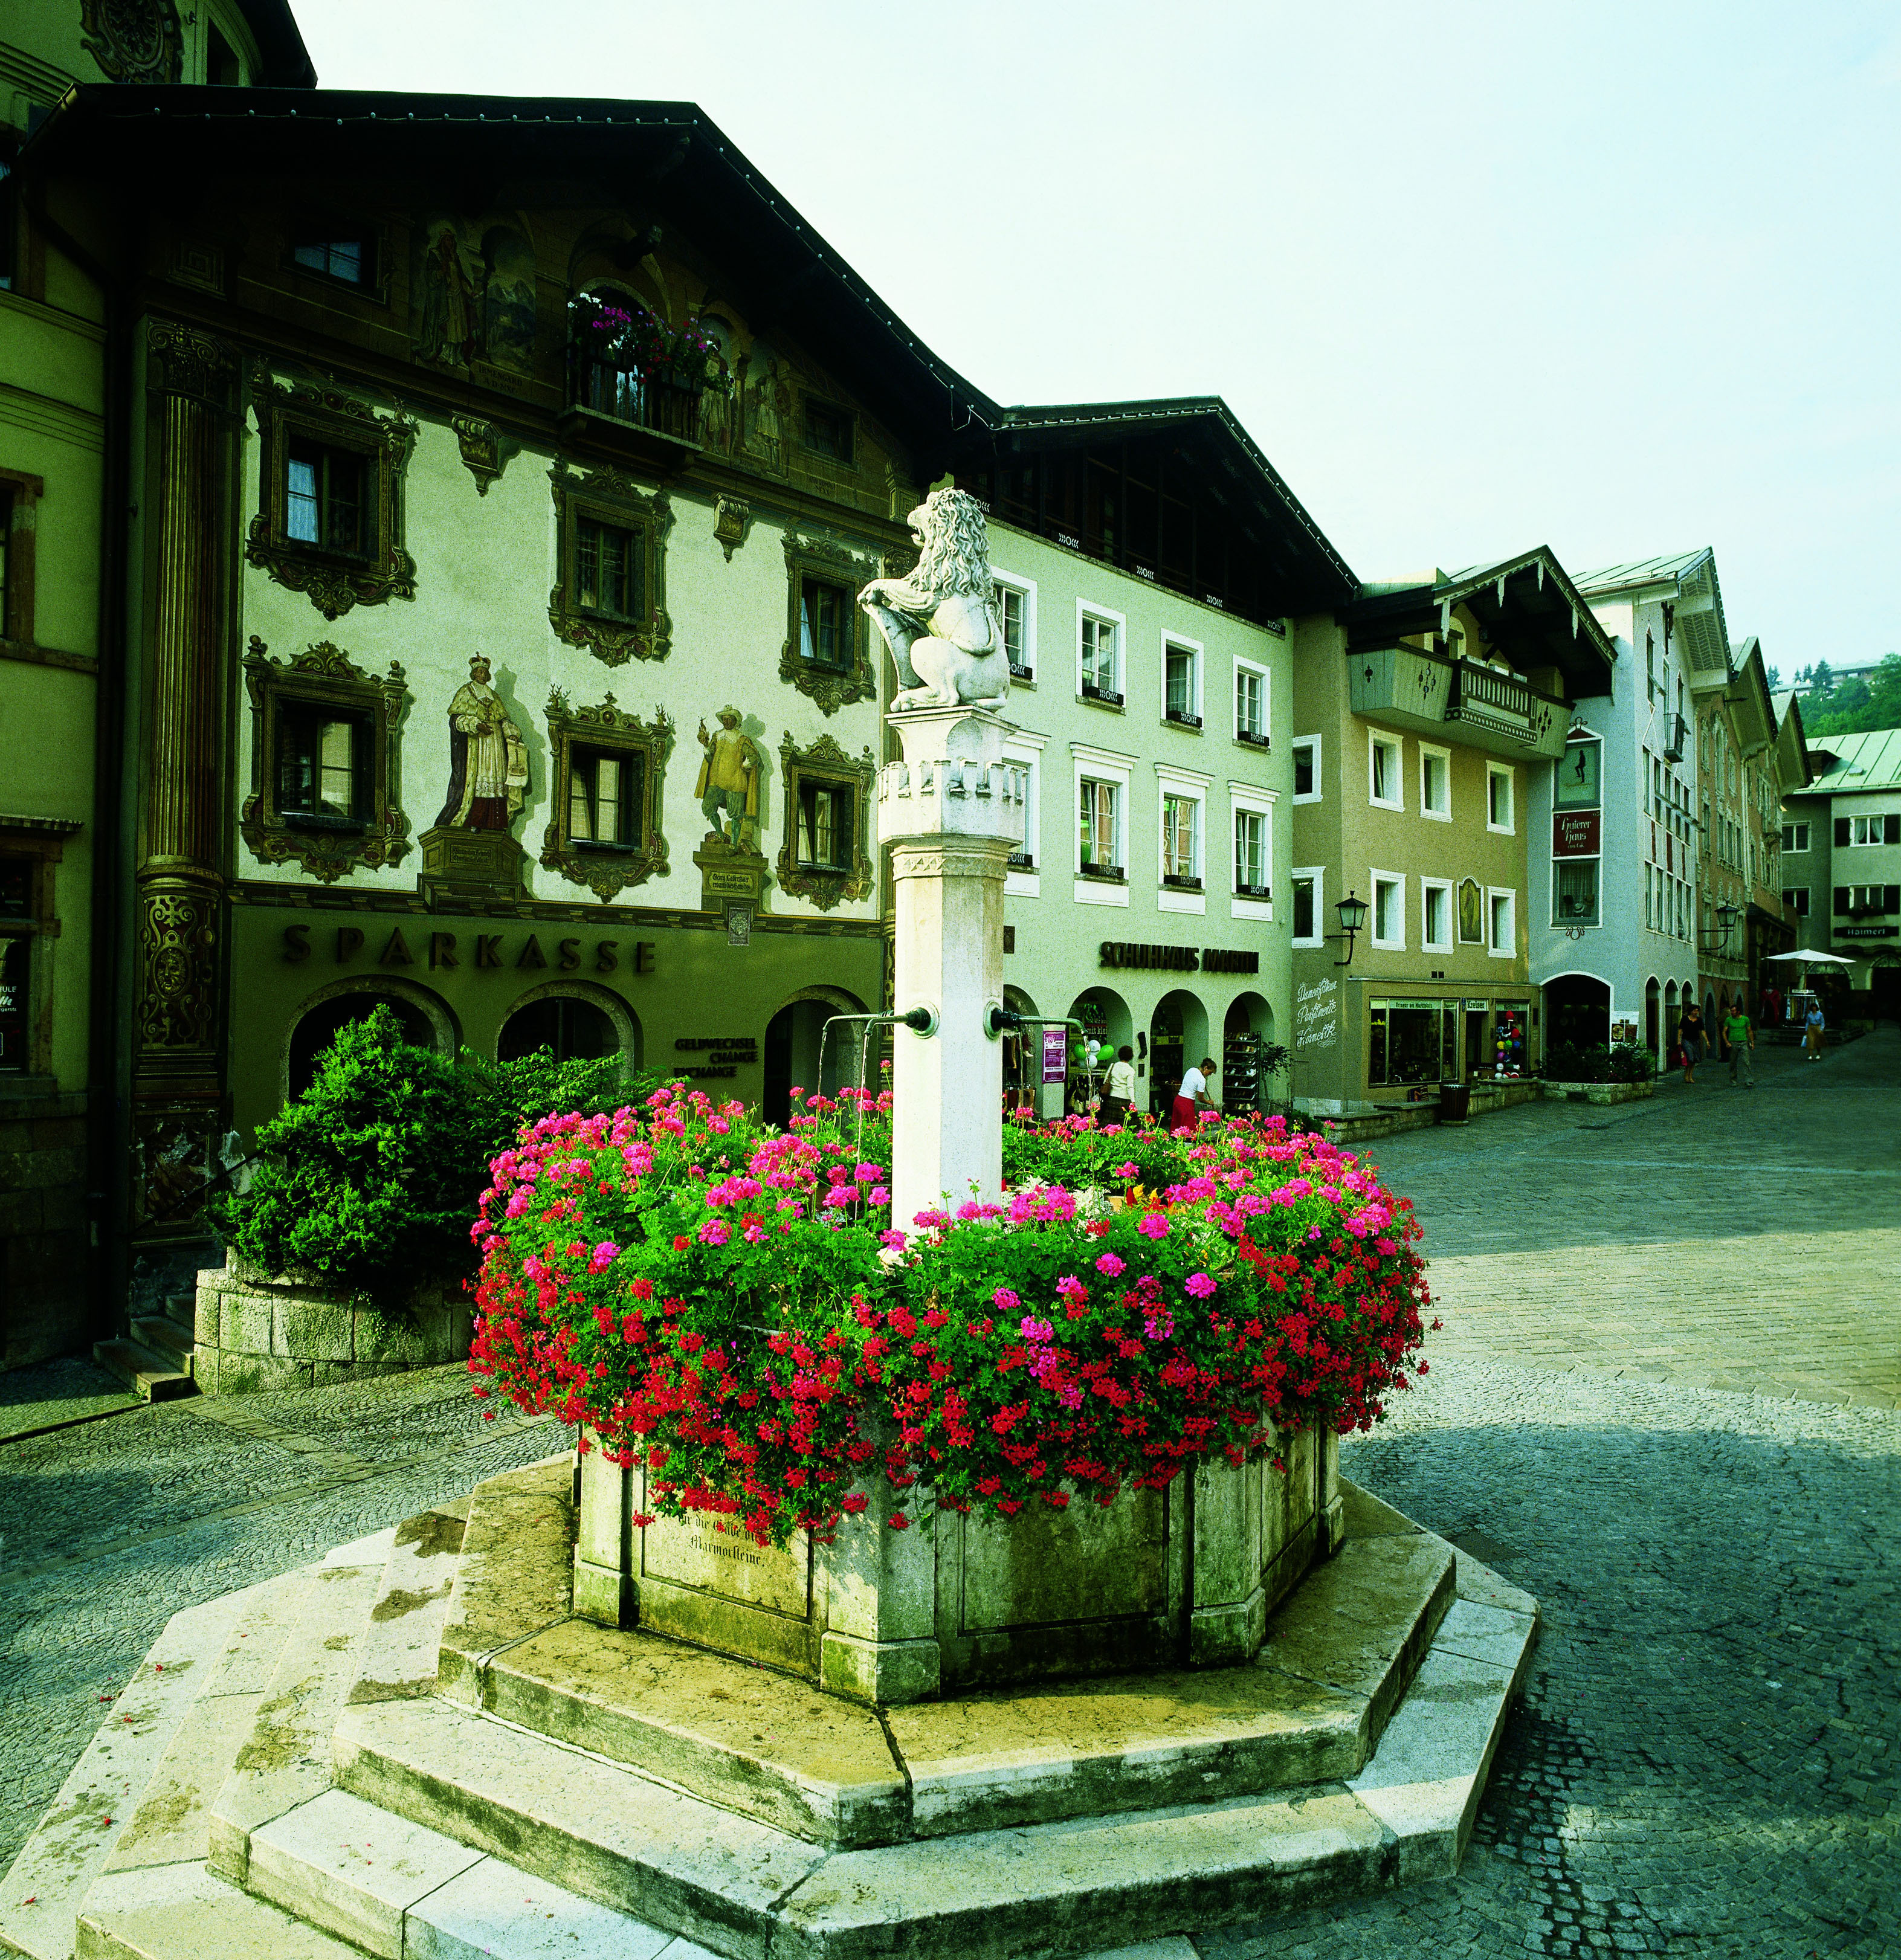 Der Rathausbrunnen wurde zur 100-jährigen Zugehörigkeit Berchtesgadens
